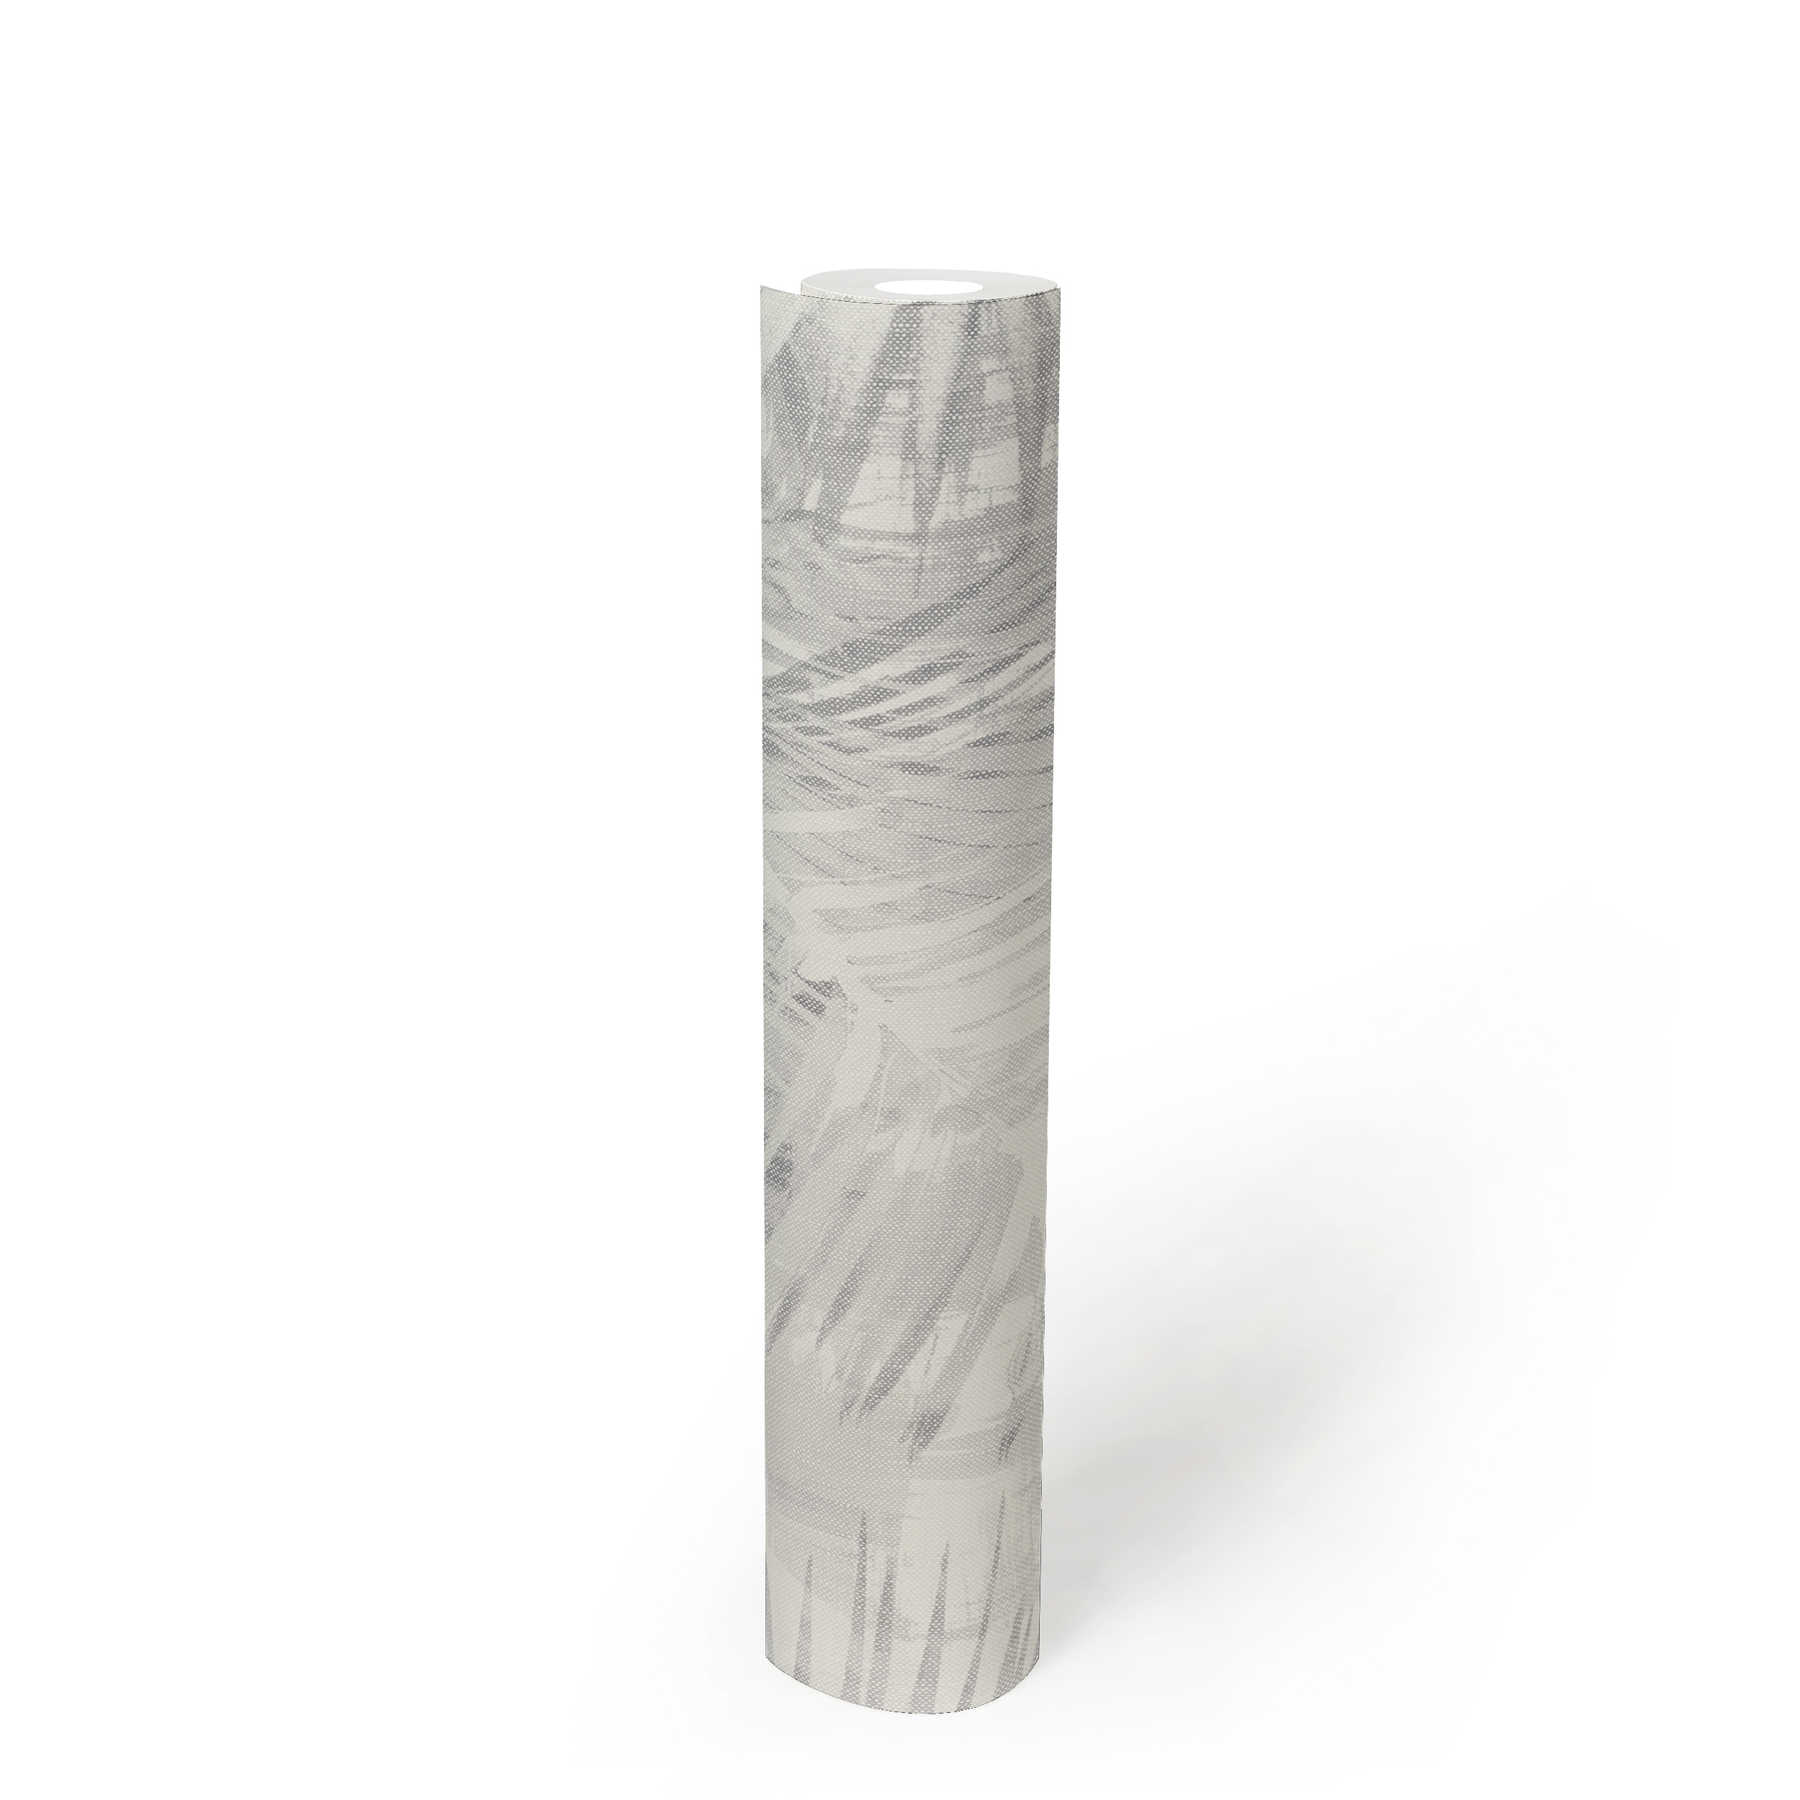             Feuilles papier peint design stylisé hygge look - gris
        